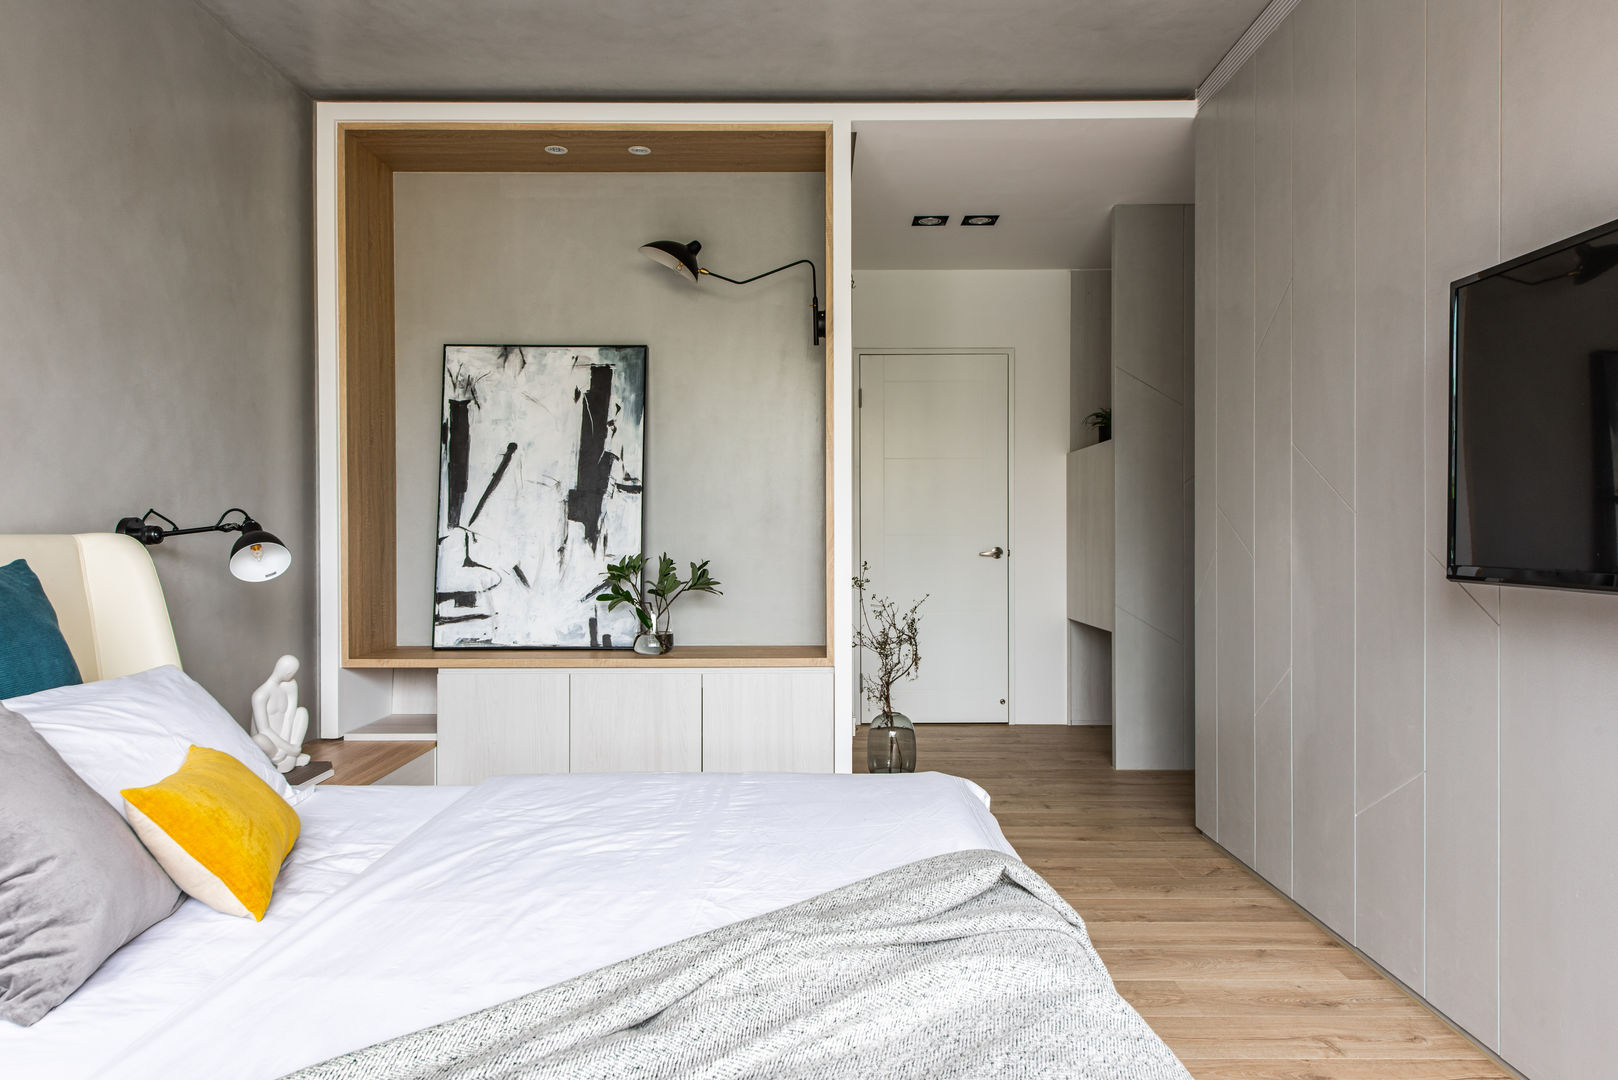 充足的收納空間讓臥室看起來整齊乾淨 Fertility Design 豐聚空間設計 Small bedroom